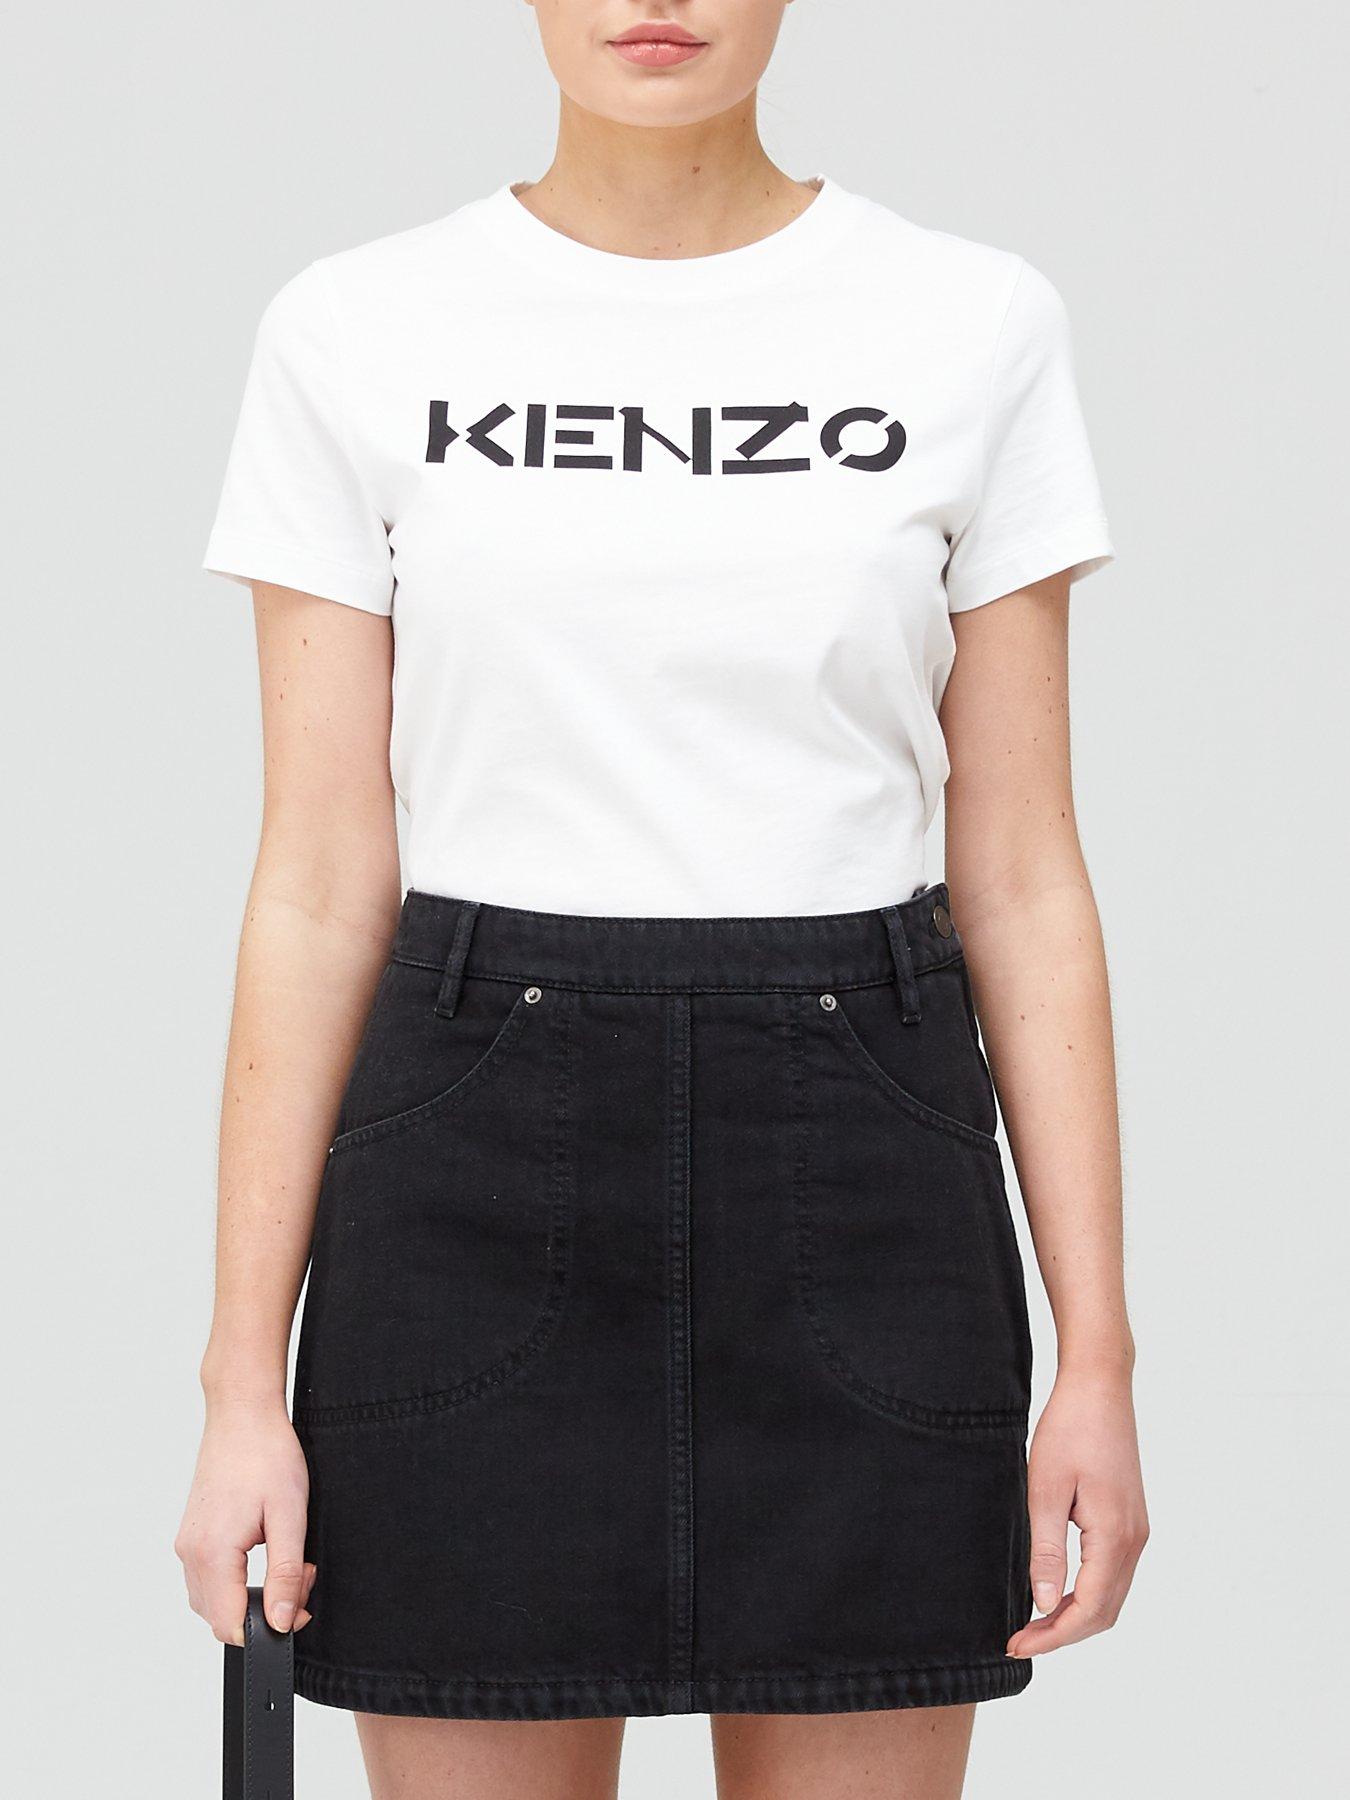 Kenzo | Very.co.uk